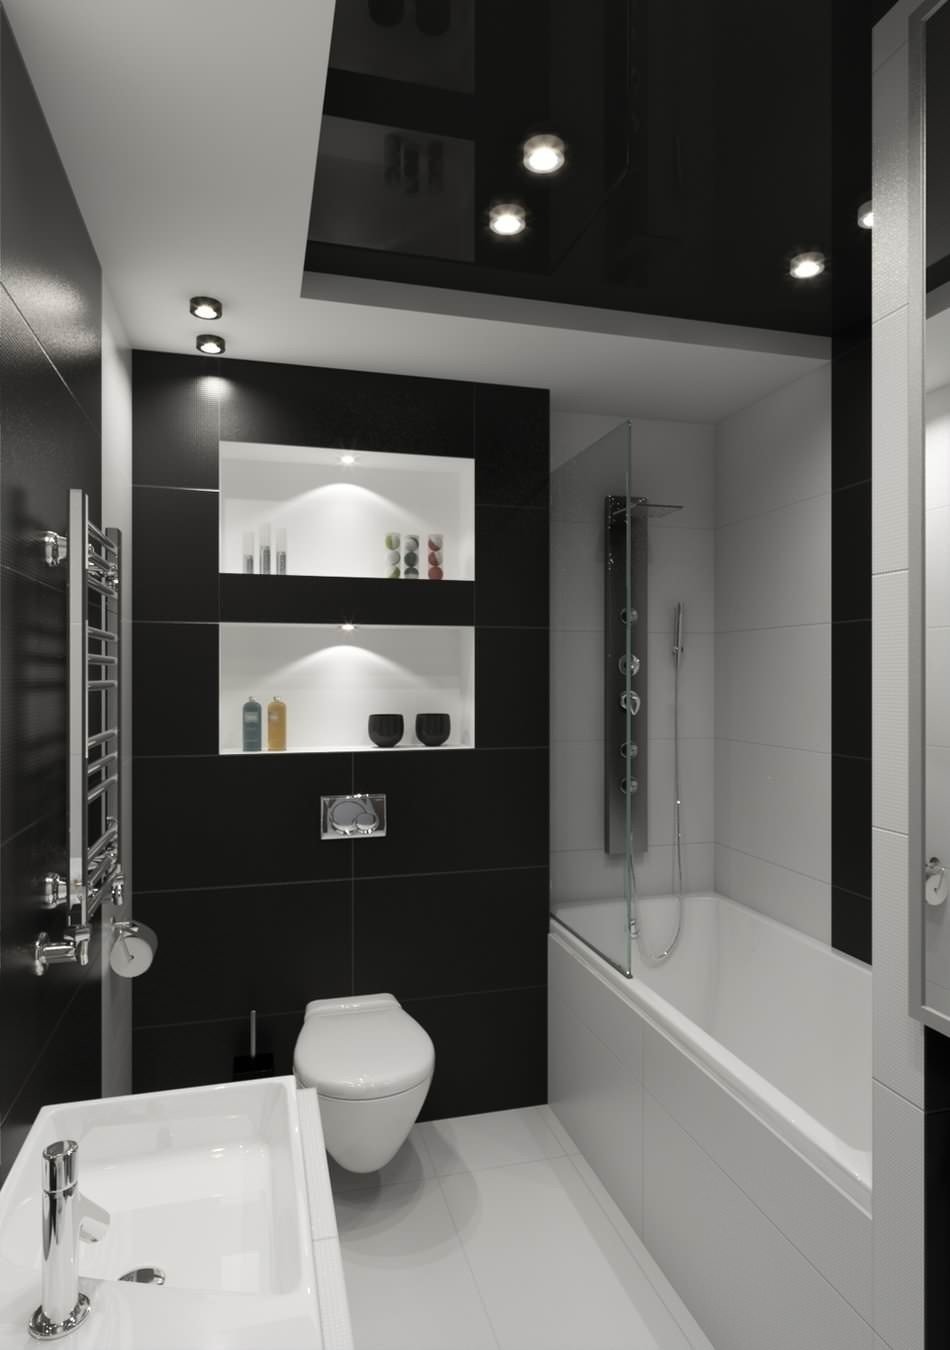 Ванная комната в черно белых тонах с черной ванной